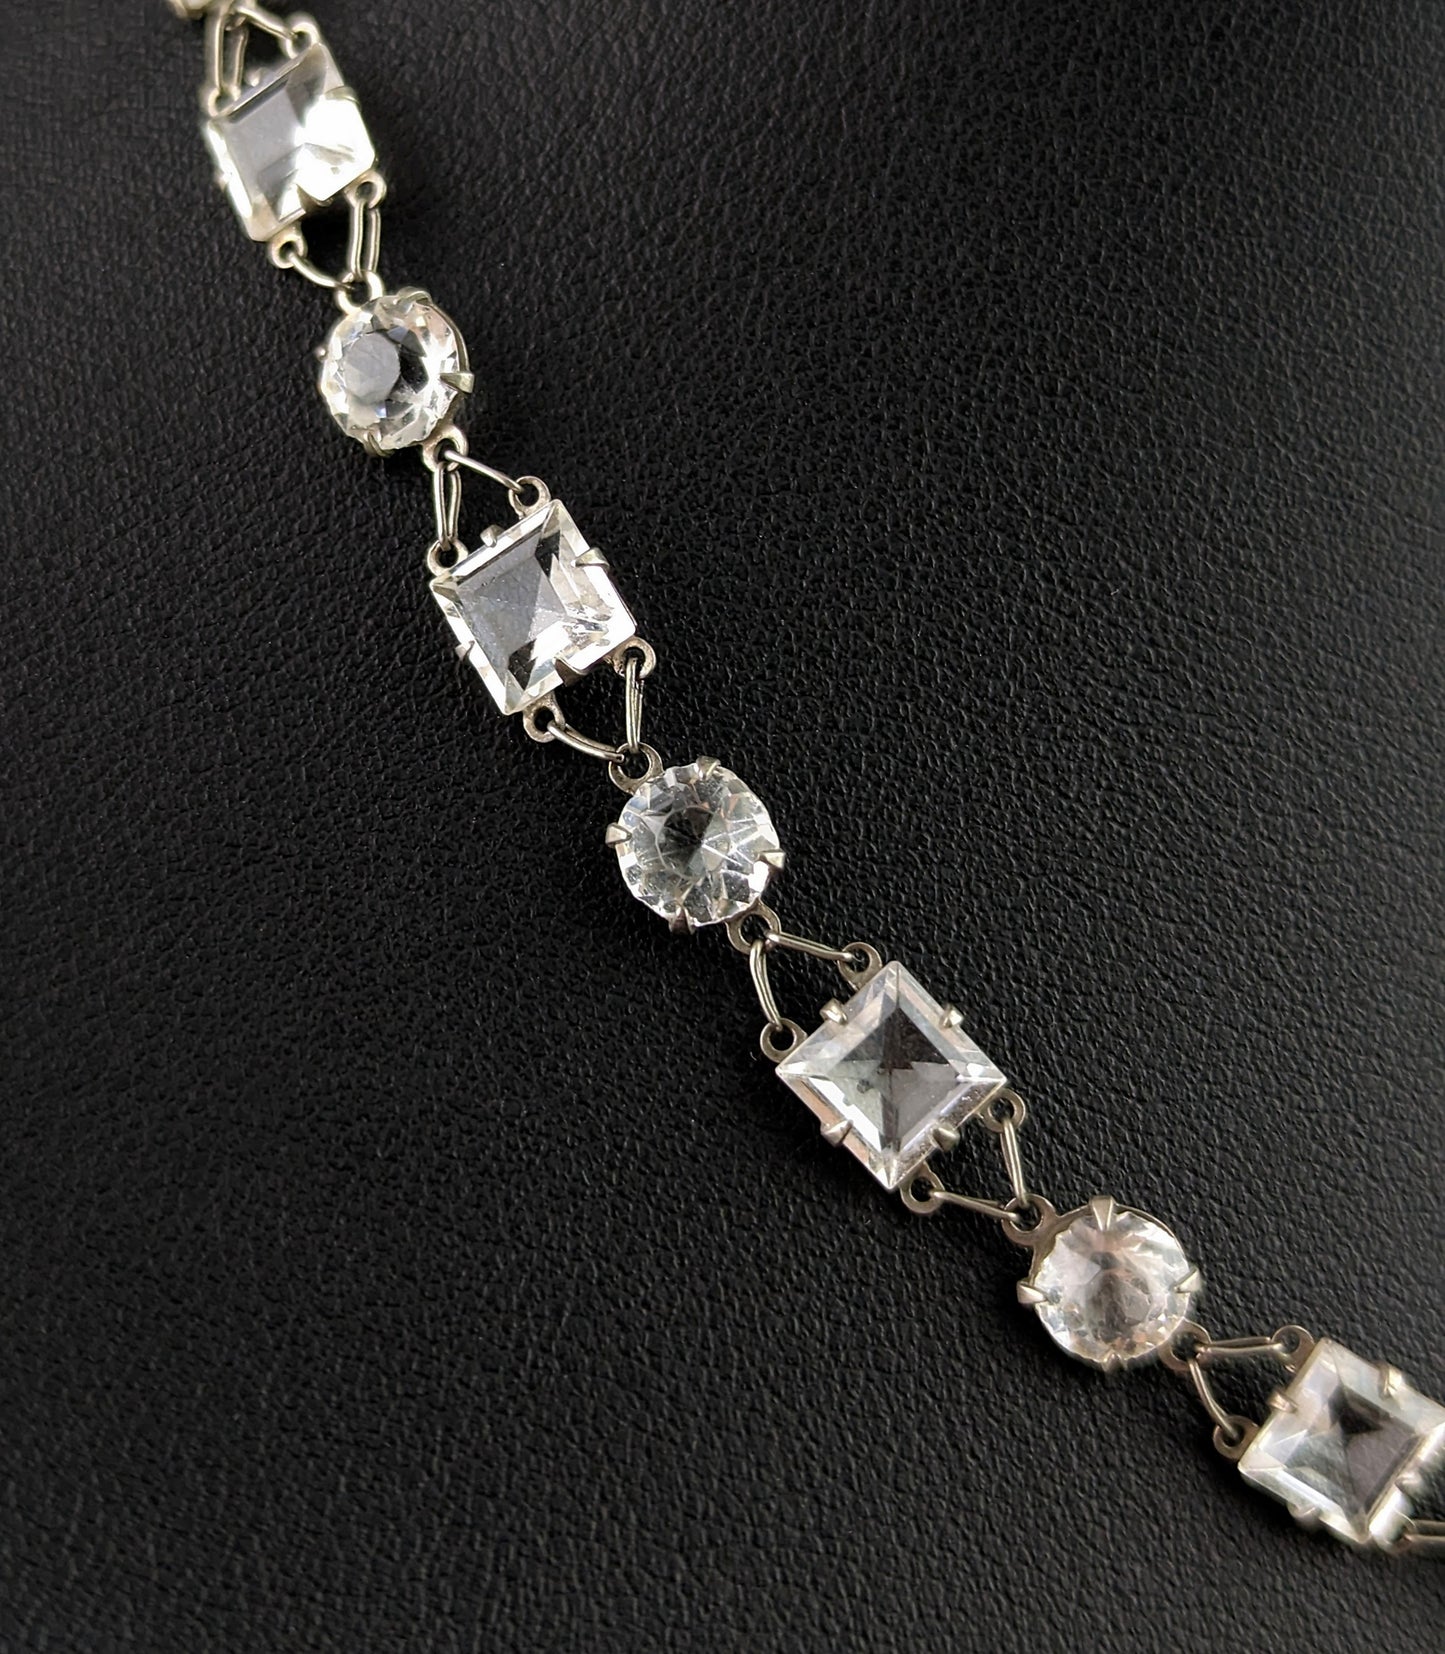 Vintage paste Riviere necklace, 800 silver, c1930s